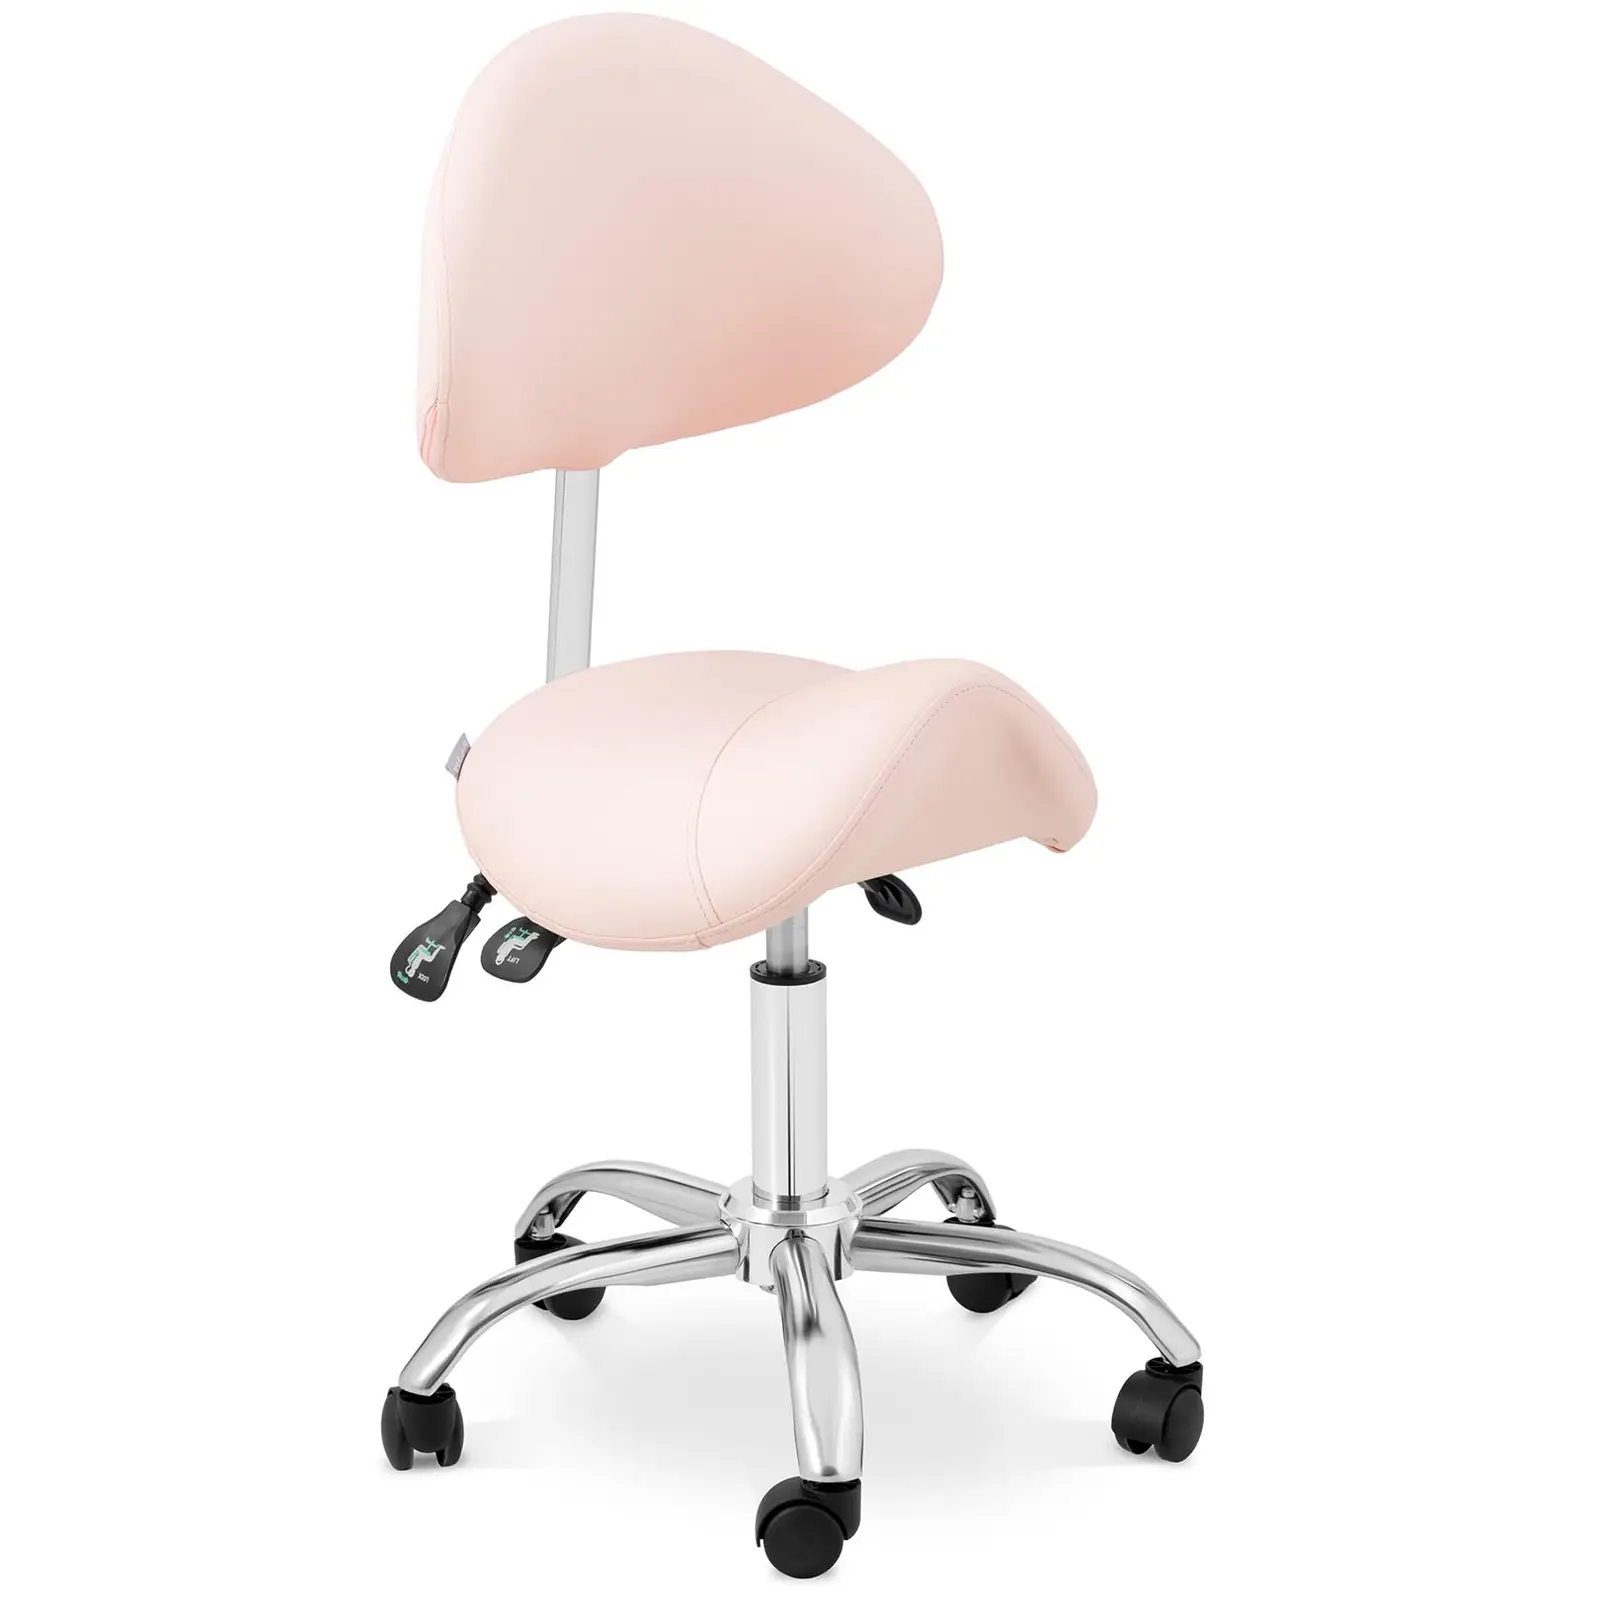 Sedlová židle -  cm - 150 kg - Růžová, Stříbrná